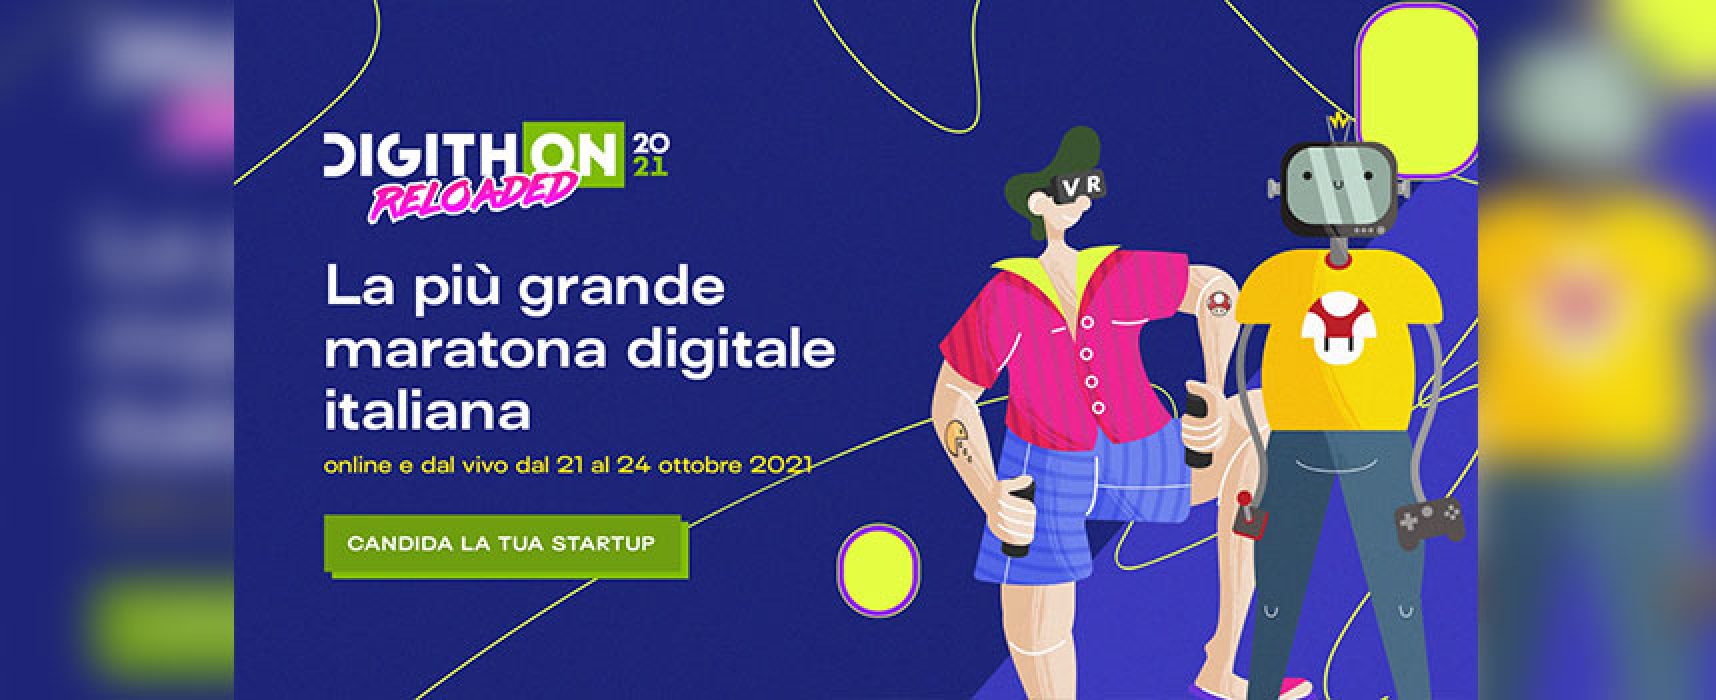 DigithON, parte la call for ideas della sesta edizione della maratona digitale